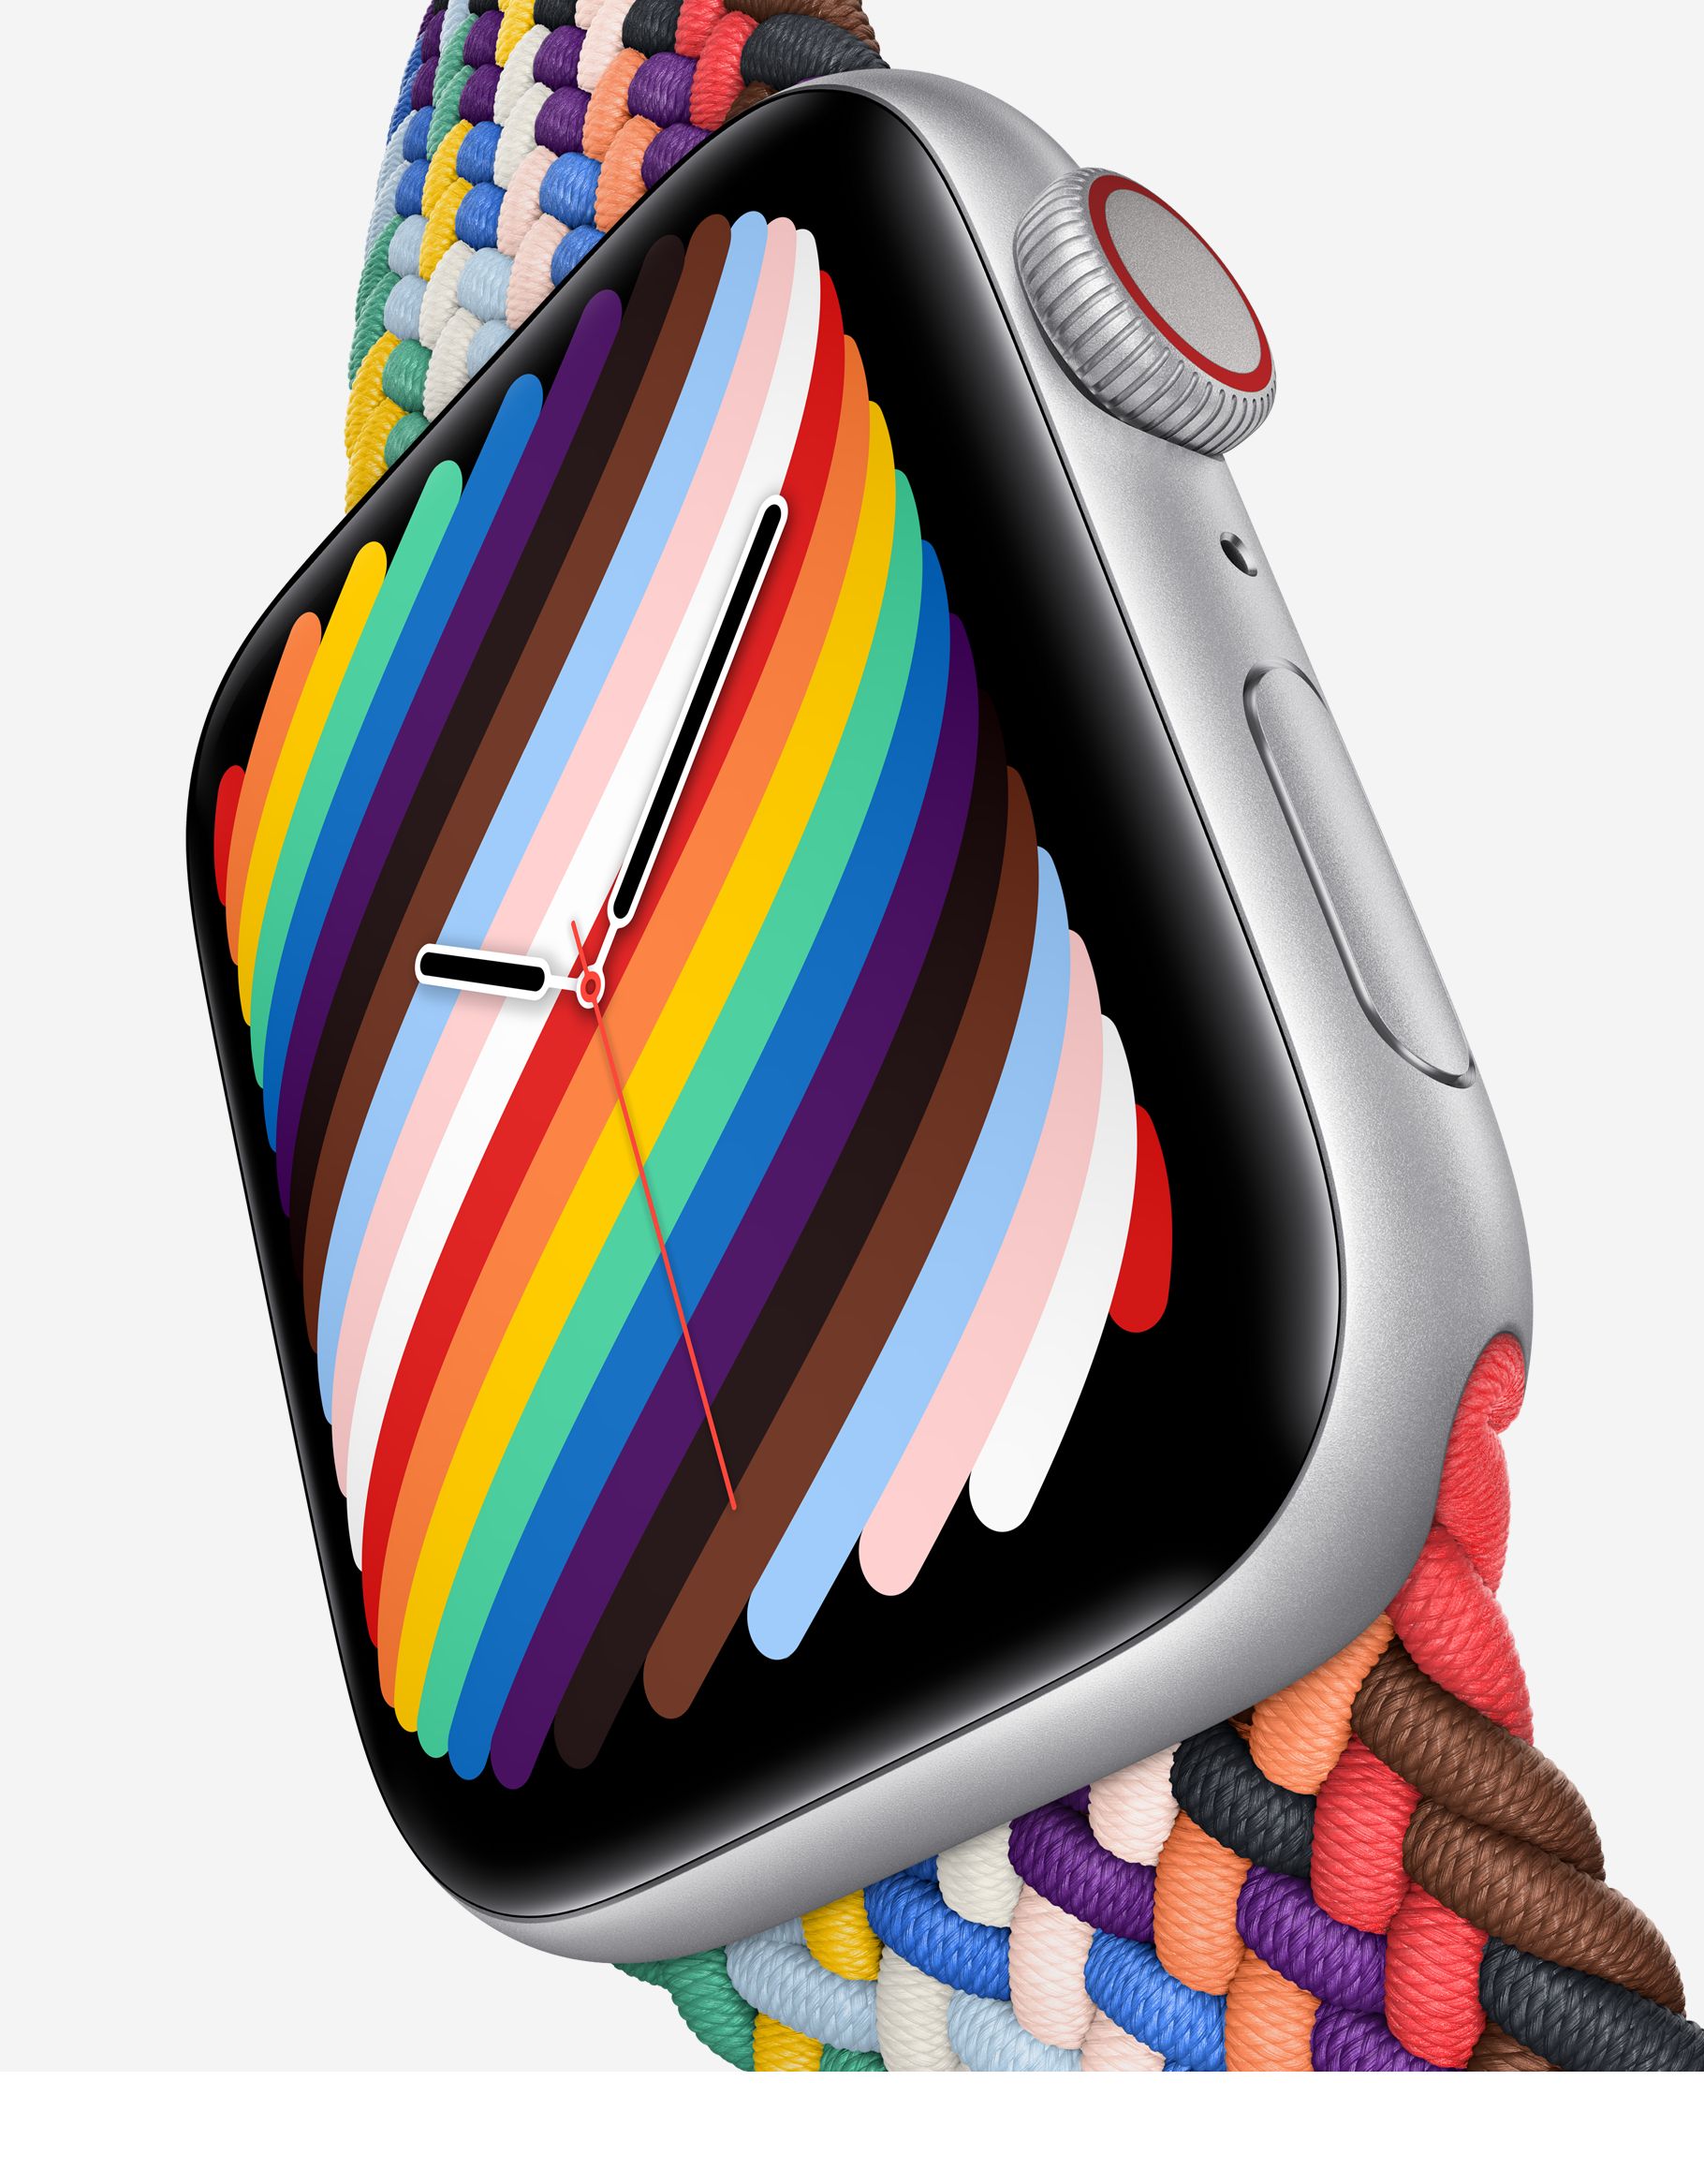 Apple Watch 7 avrà un nuovo design e offrirà nuovi colori?